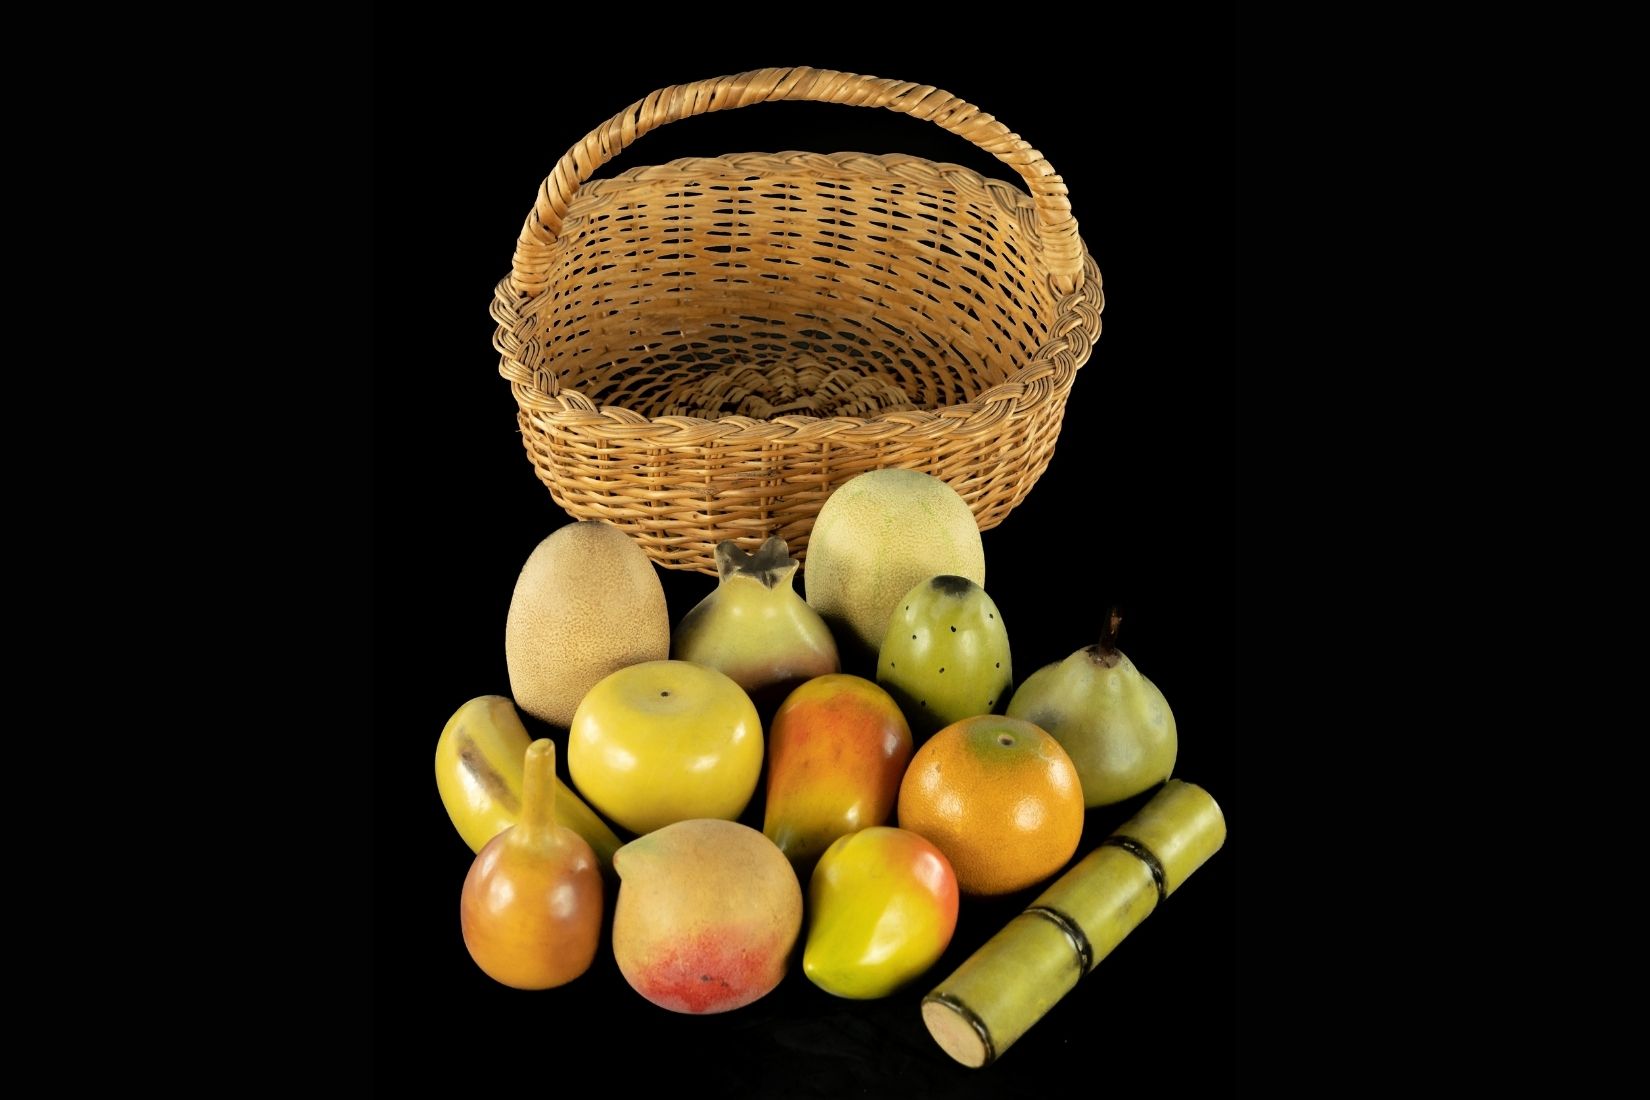 Frutas de madera laqueadas y policromadas. Artesano desconocido. Uruapan, Mich. Col. María Teresa Pomar. (Foto: EKV).